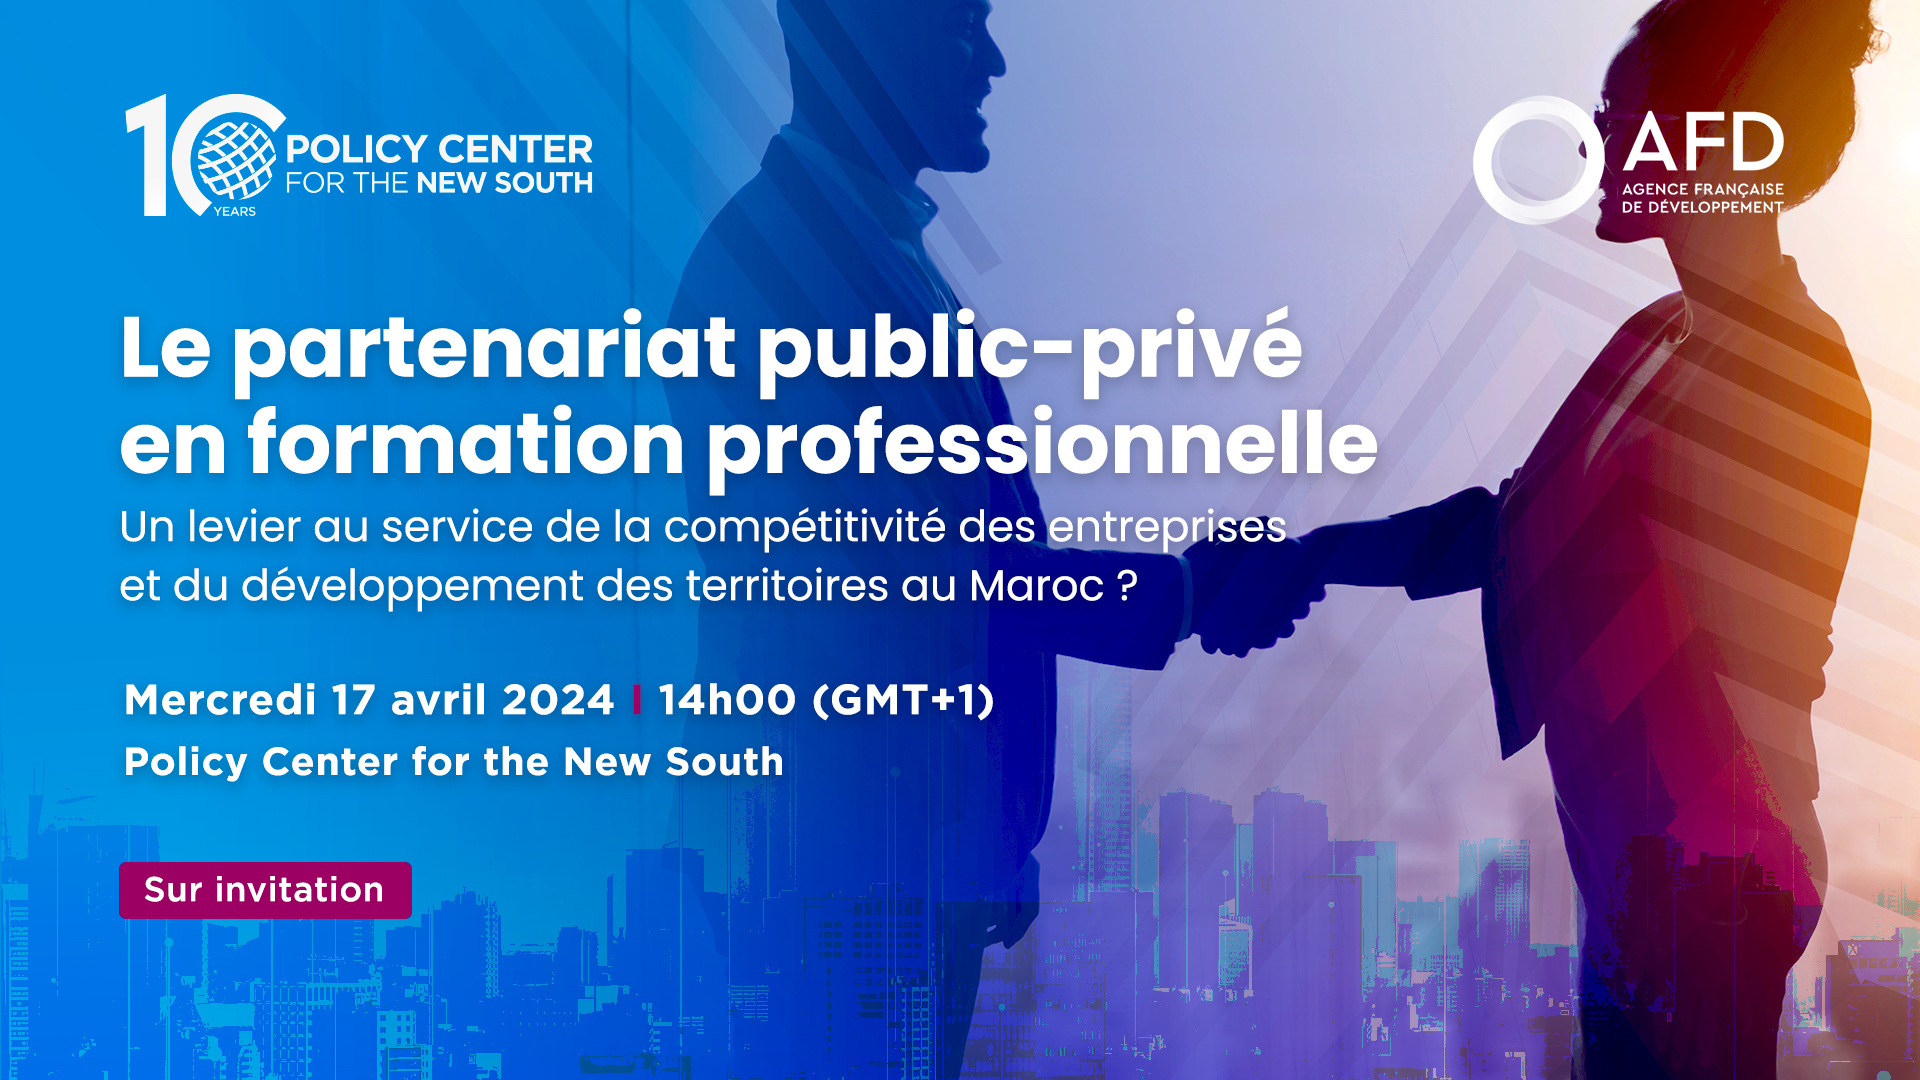 Le partenariat public-privé en formation professionnelle : un levier au service de la compétitivité des entreprises et du développement des territoires au Maroc ?